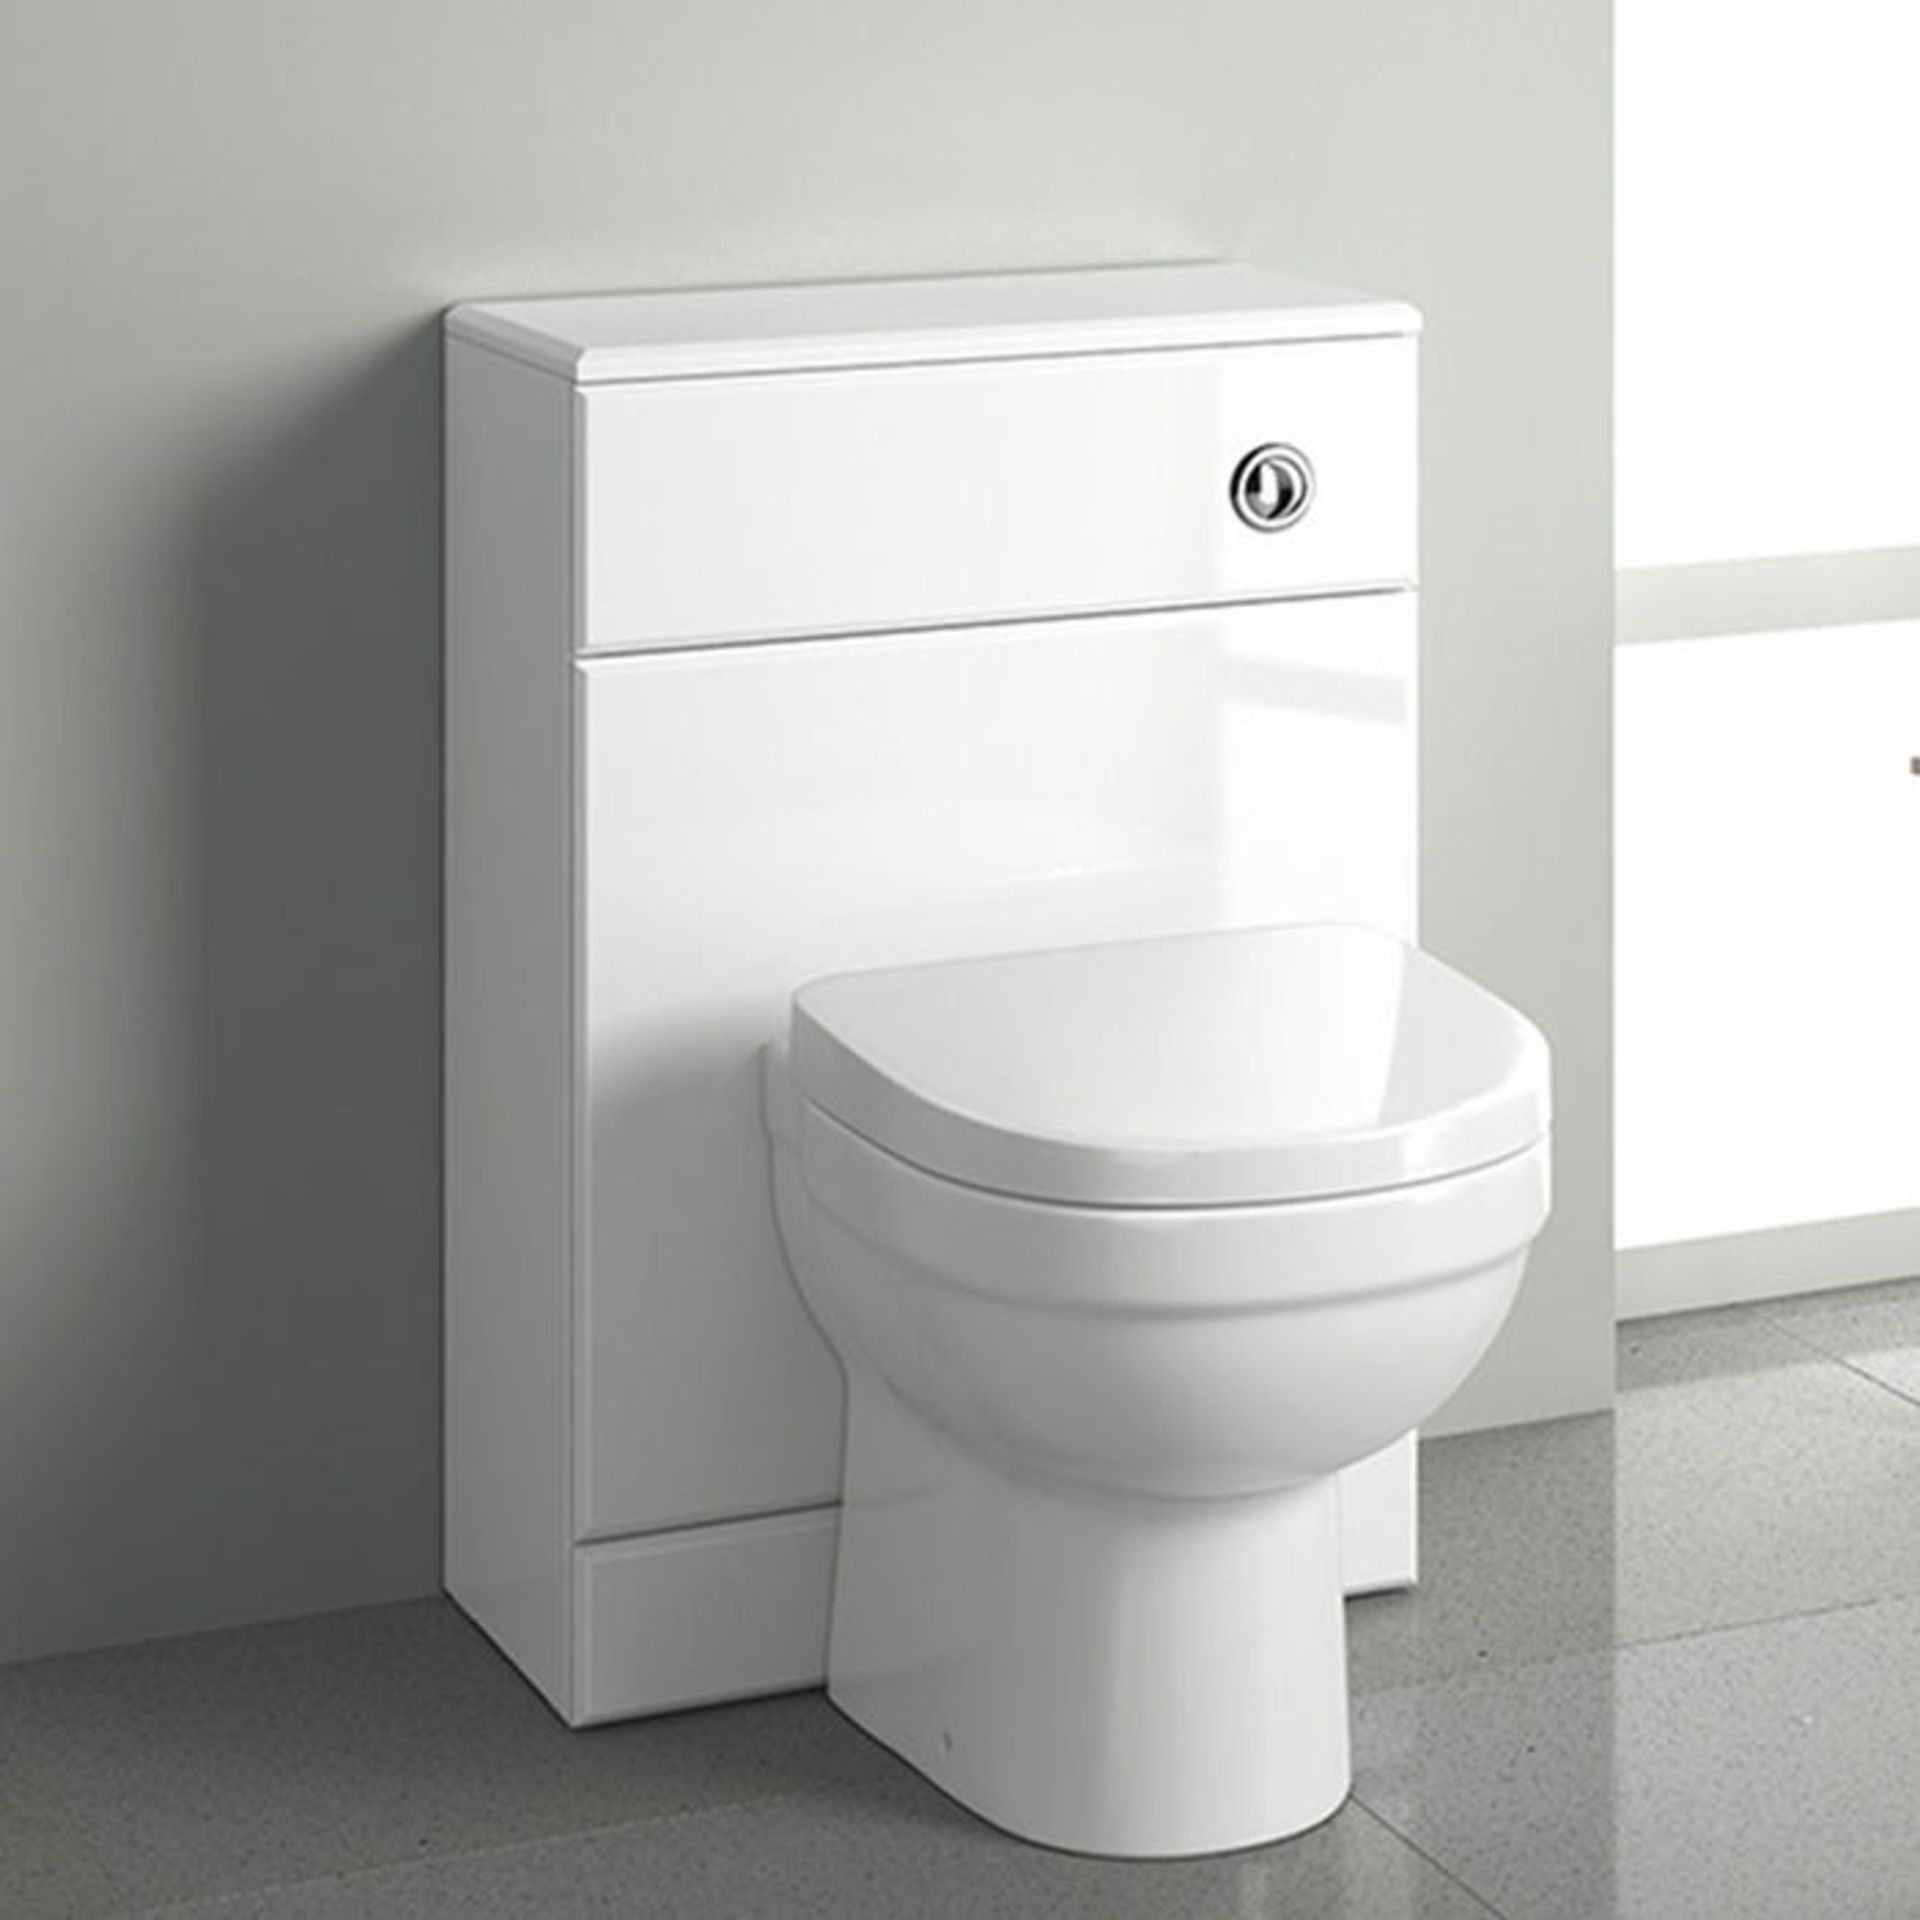 (TS92) 500x200mm Quartz Gloss White Back To Wall Toilet Unit. RRP £125.99. Pristine gloss white